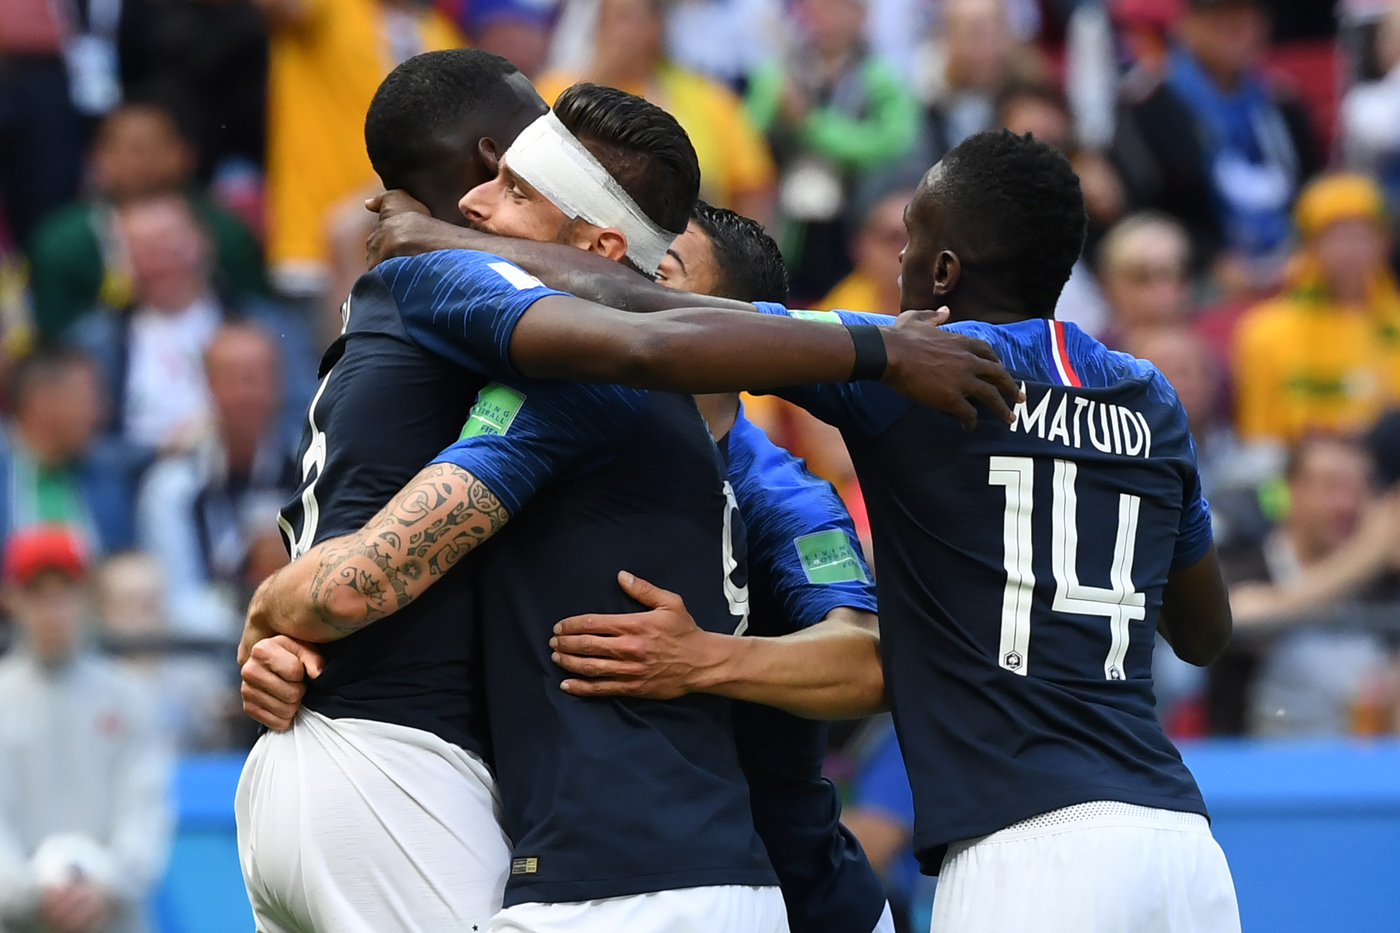 Francia-Argentina sabato 30 giugno, analisi e pronostico ottavi di finale Mondiali Russia 2018